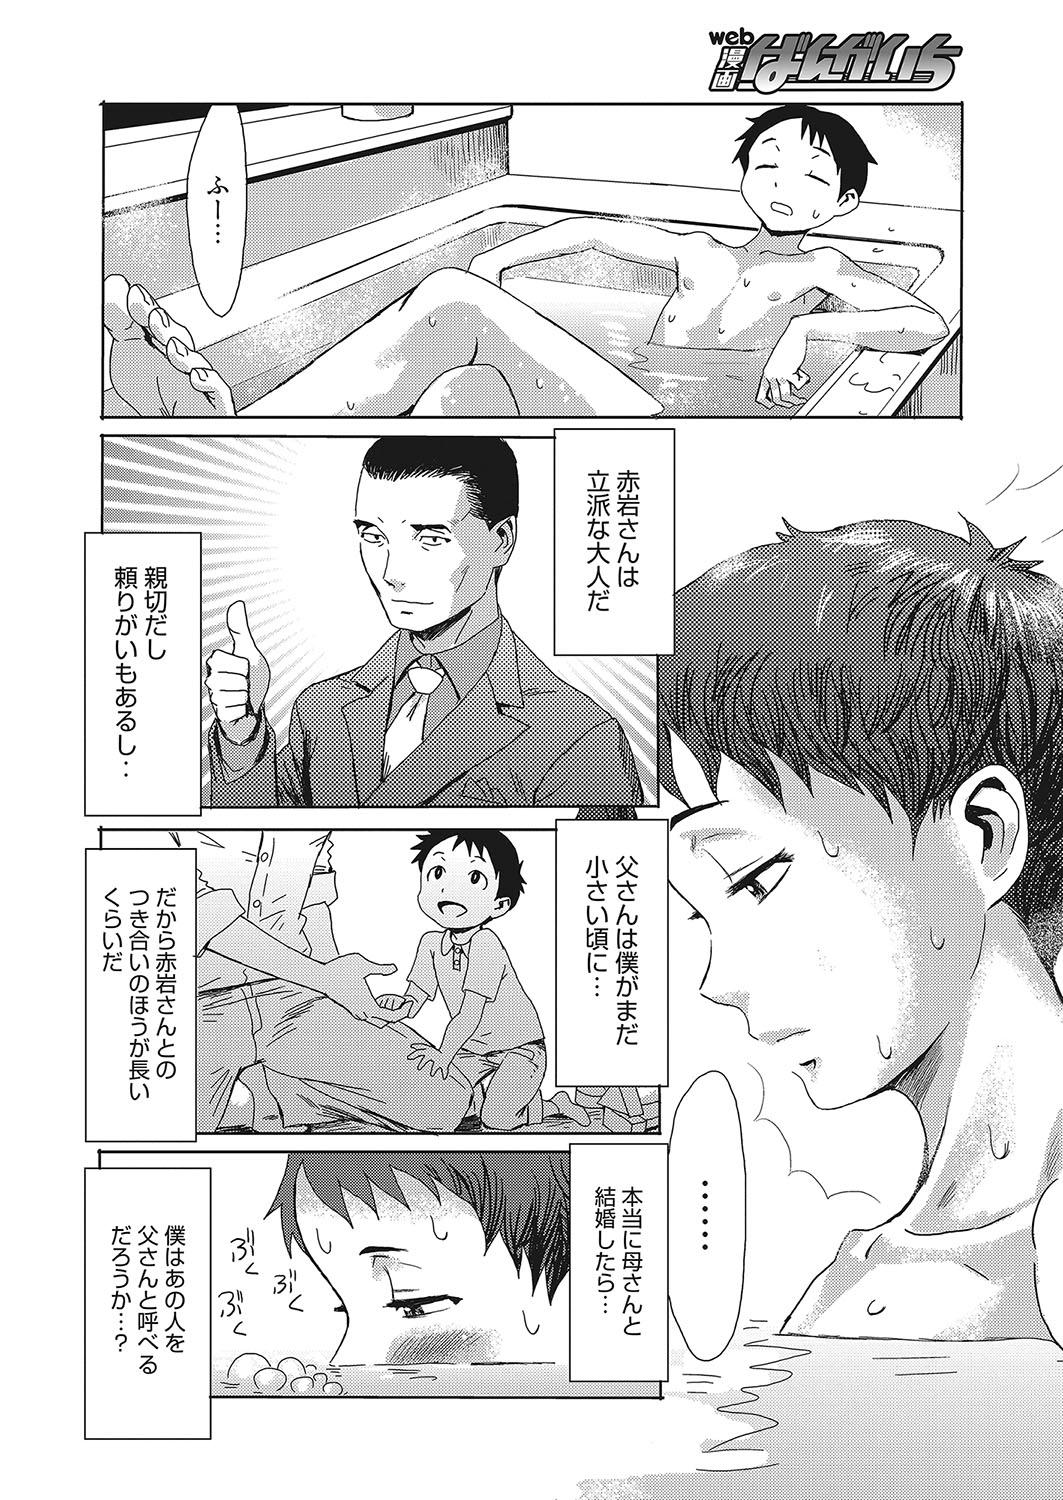 Prima Web Manga Bangaichi Vol. 12 Hunks - Page 5